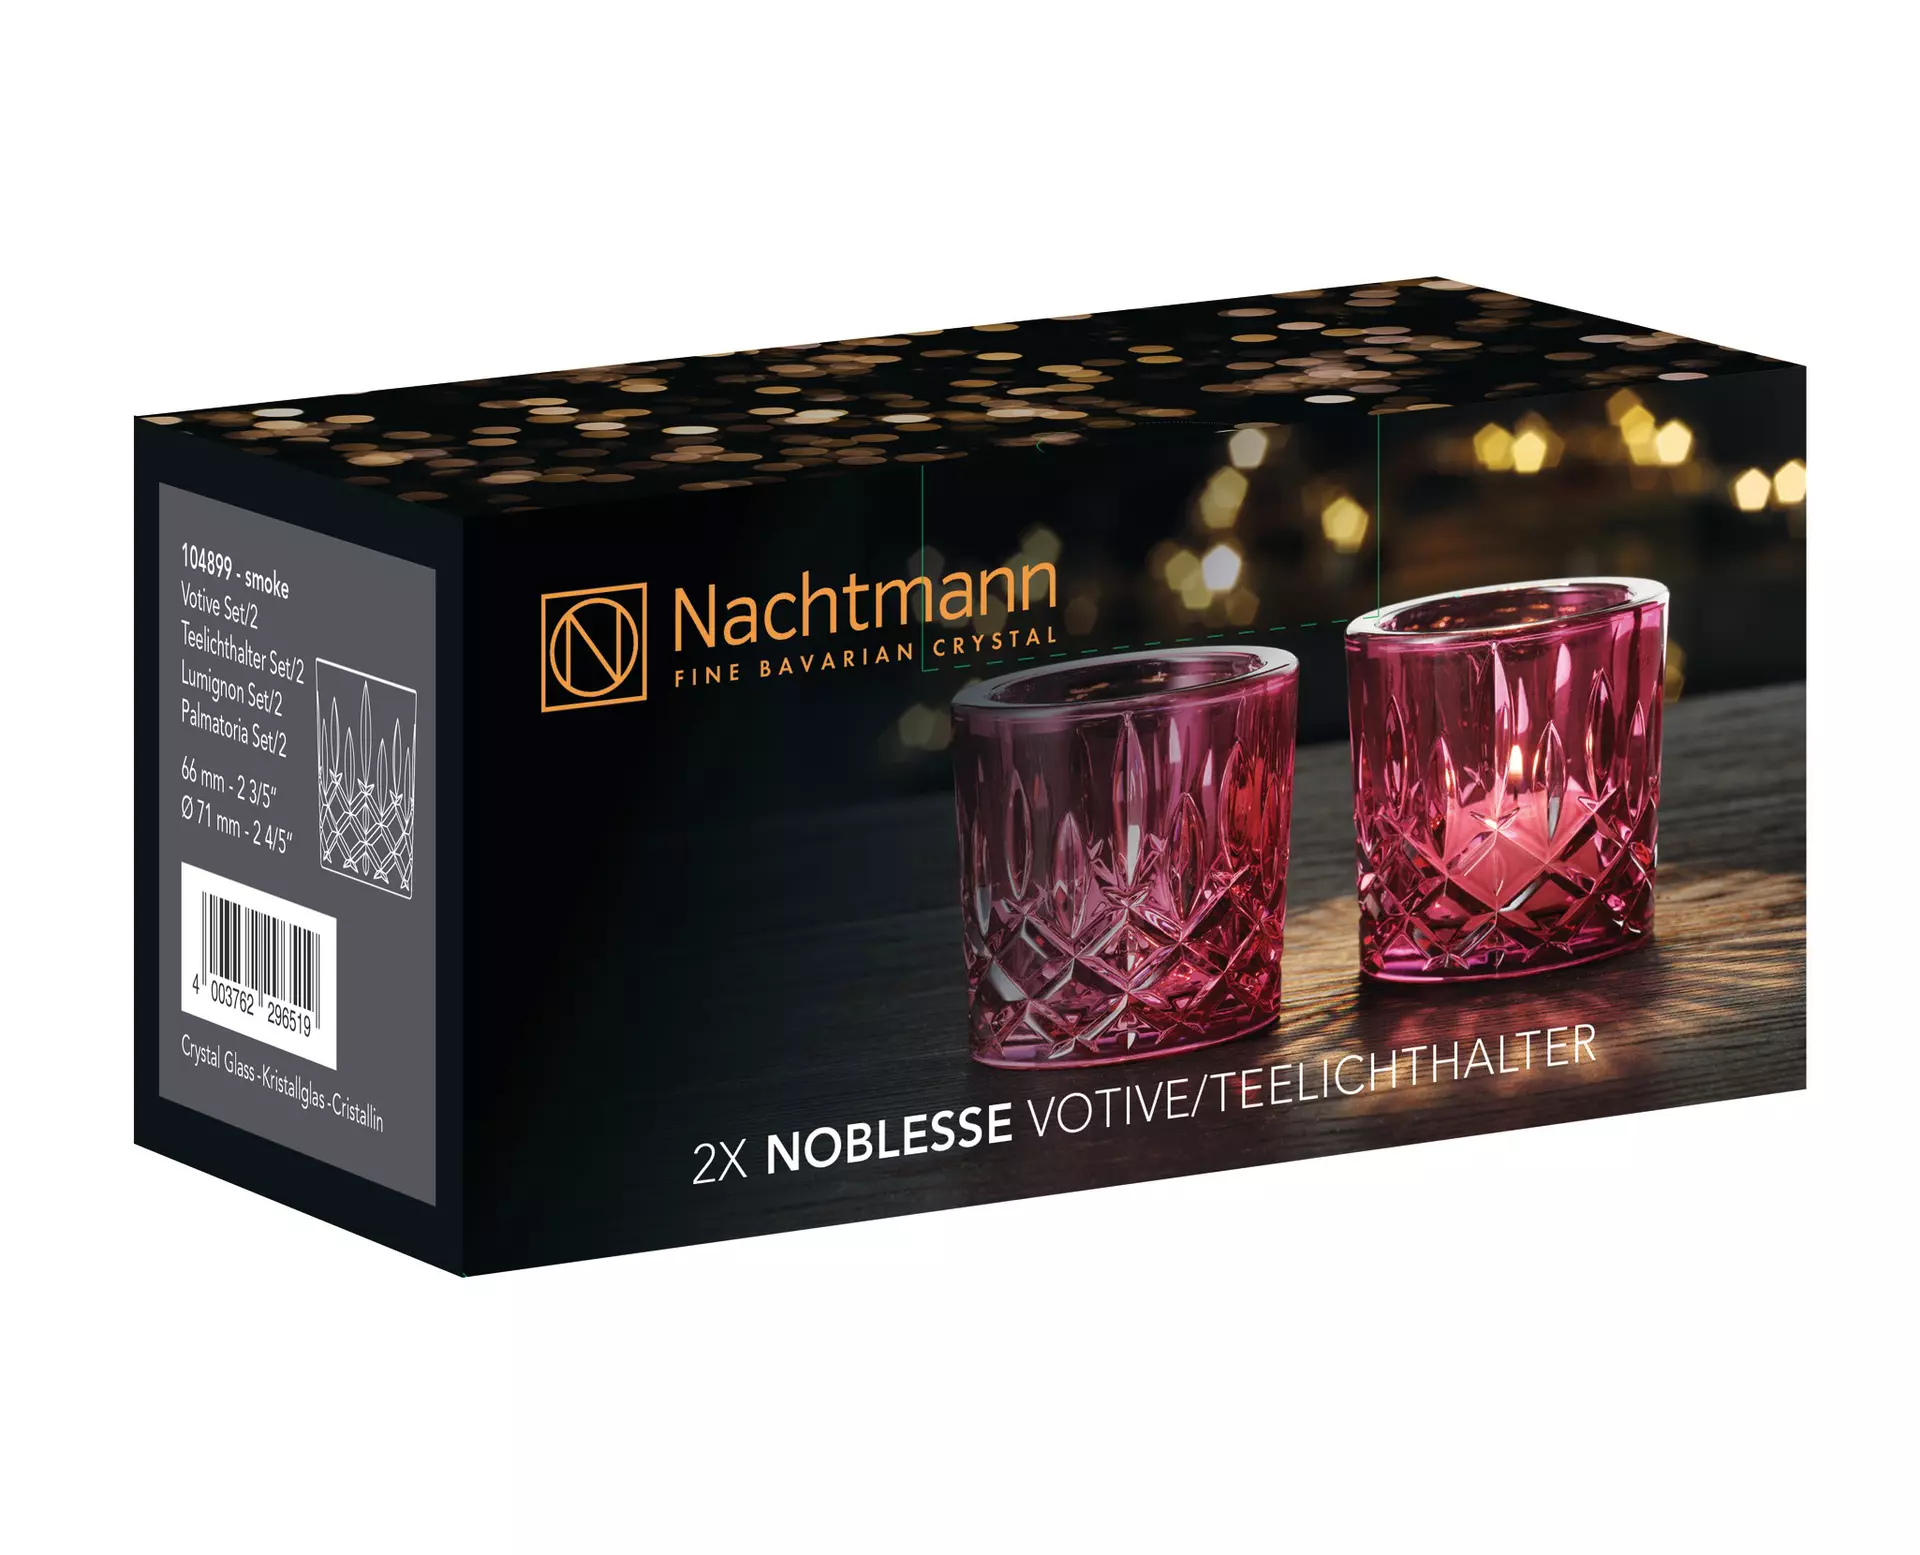 Teelichthalter Noblesse Nachtmann Glas 